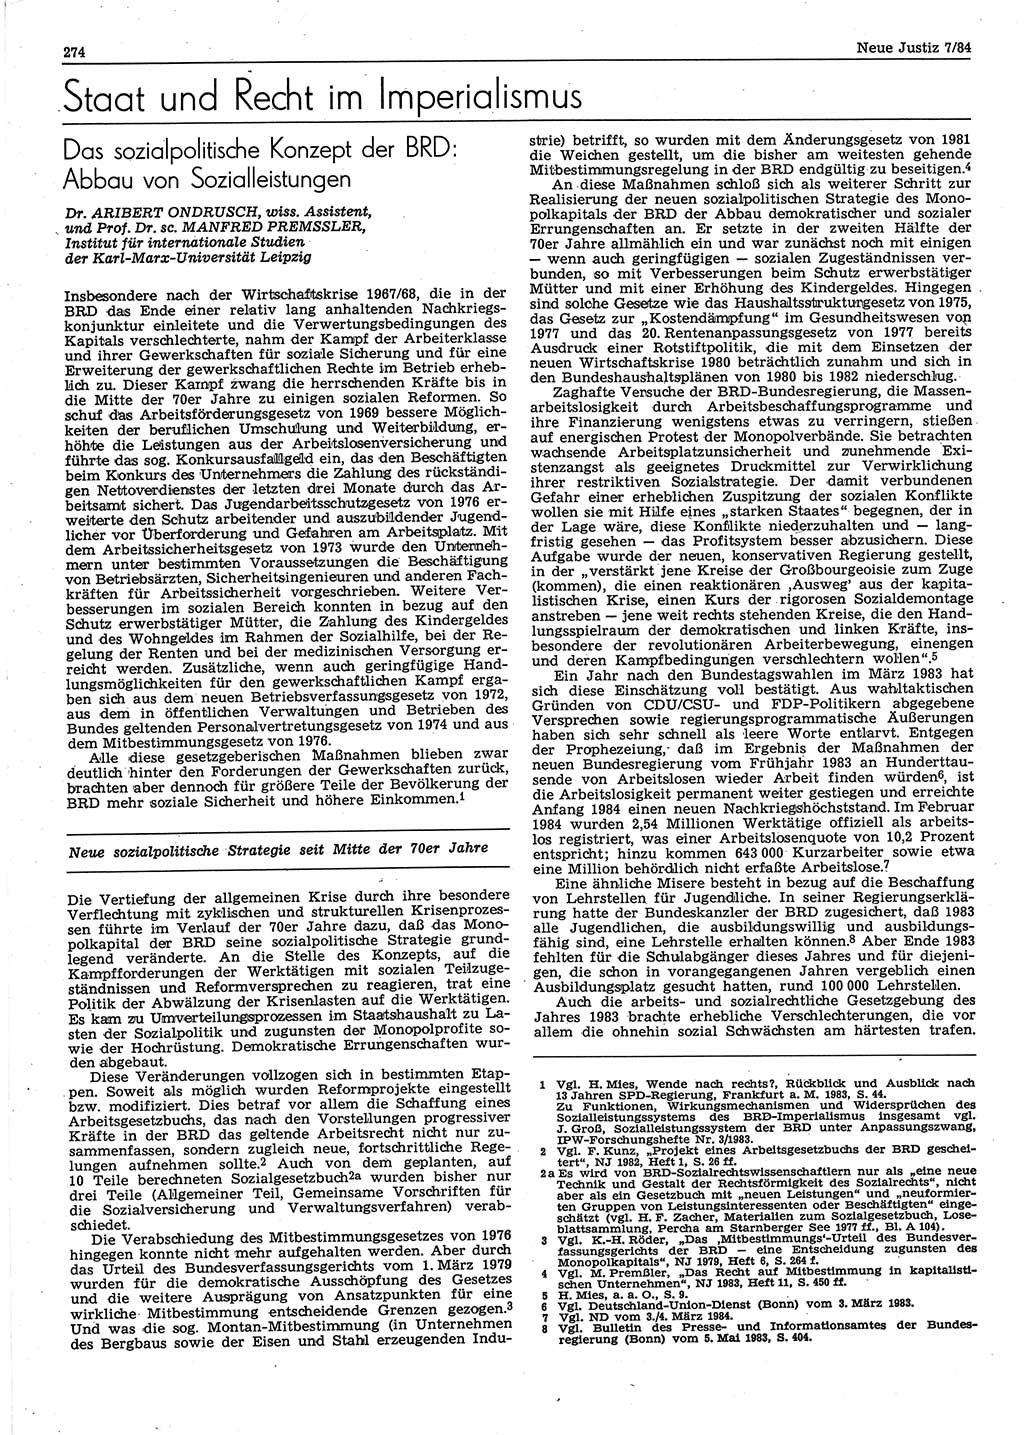 Neue Justiz (NJ), Zeitschrift für sozialistisches Recht und Gesetzlichkeit [Deutsche Demokratische Republik (DDR)], 38. Jahrgang 1984, Seite 274 (NJ DDR 1984, S. 274)